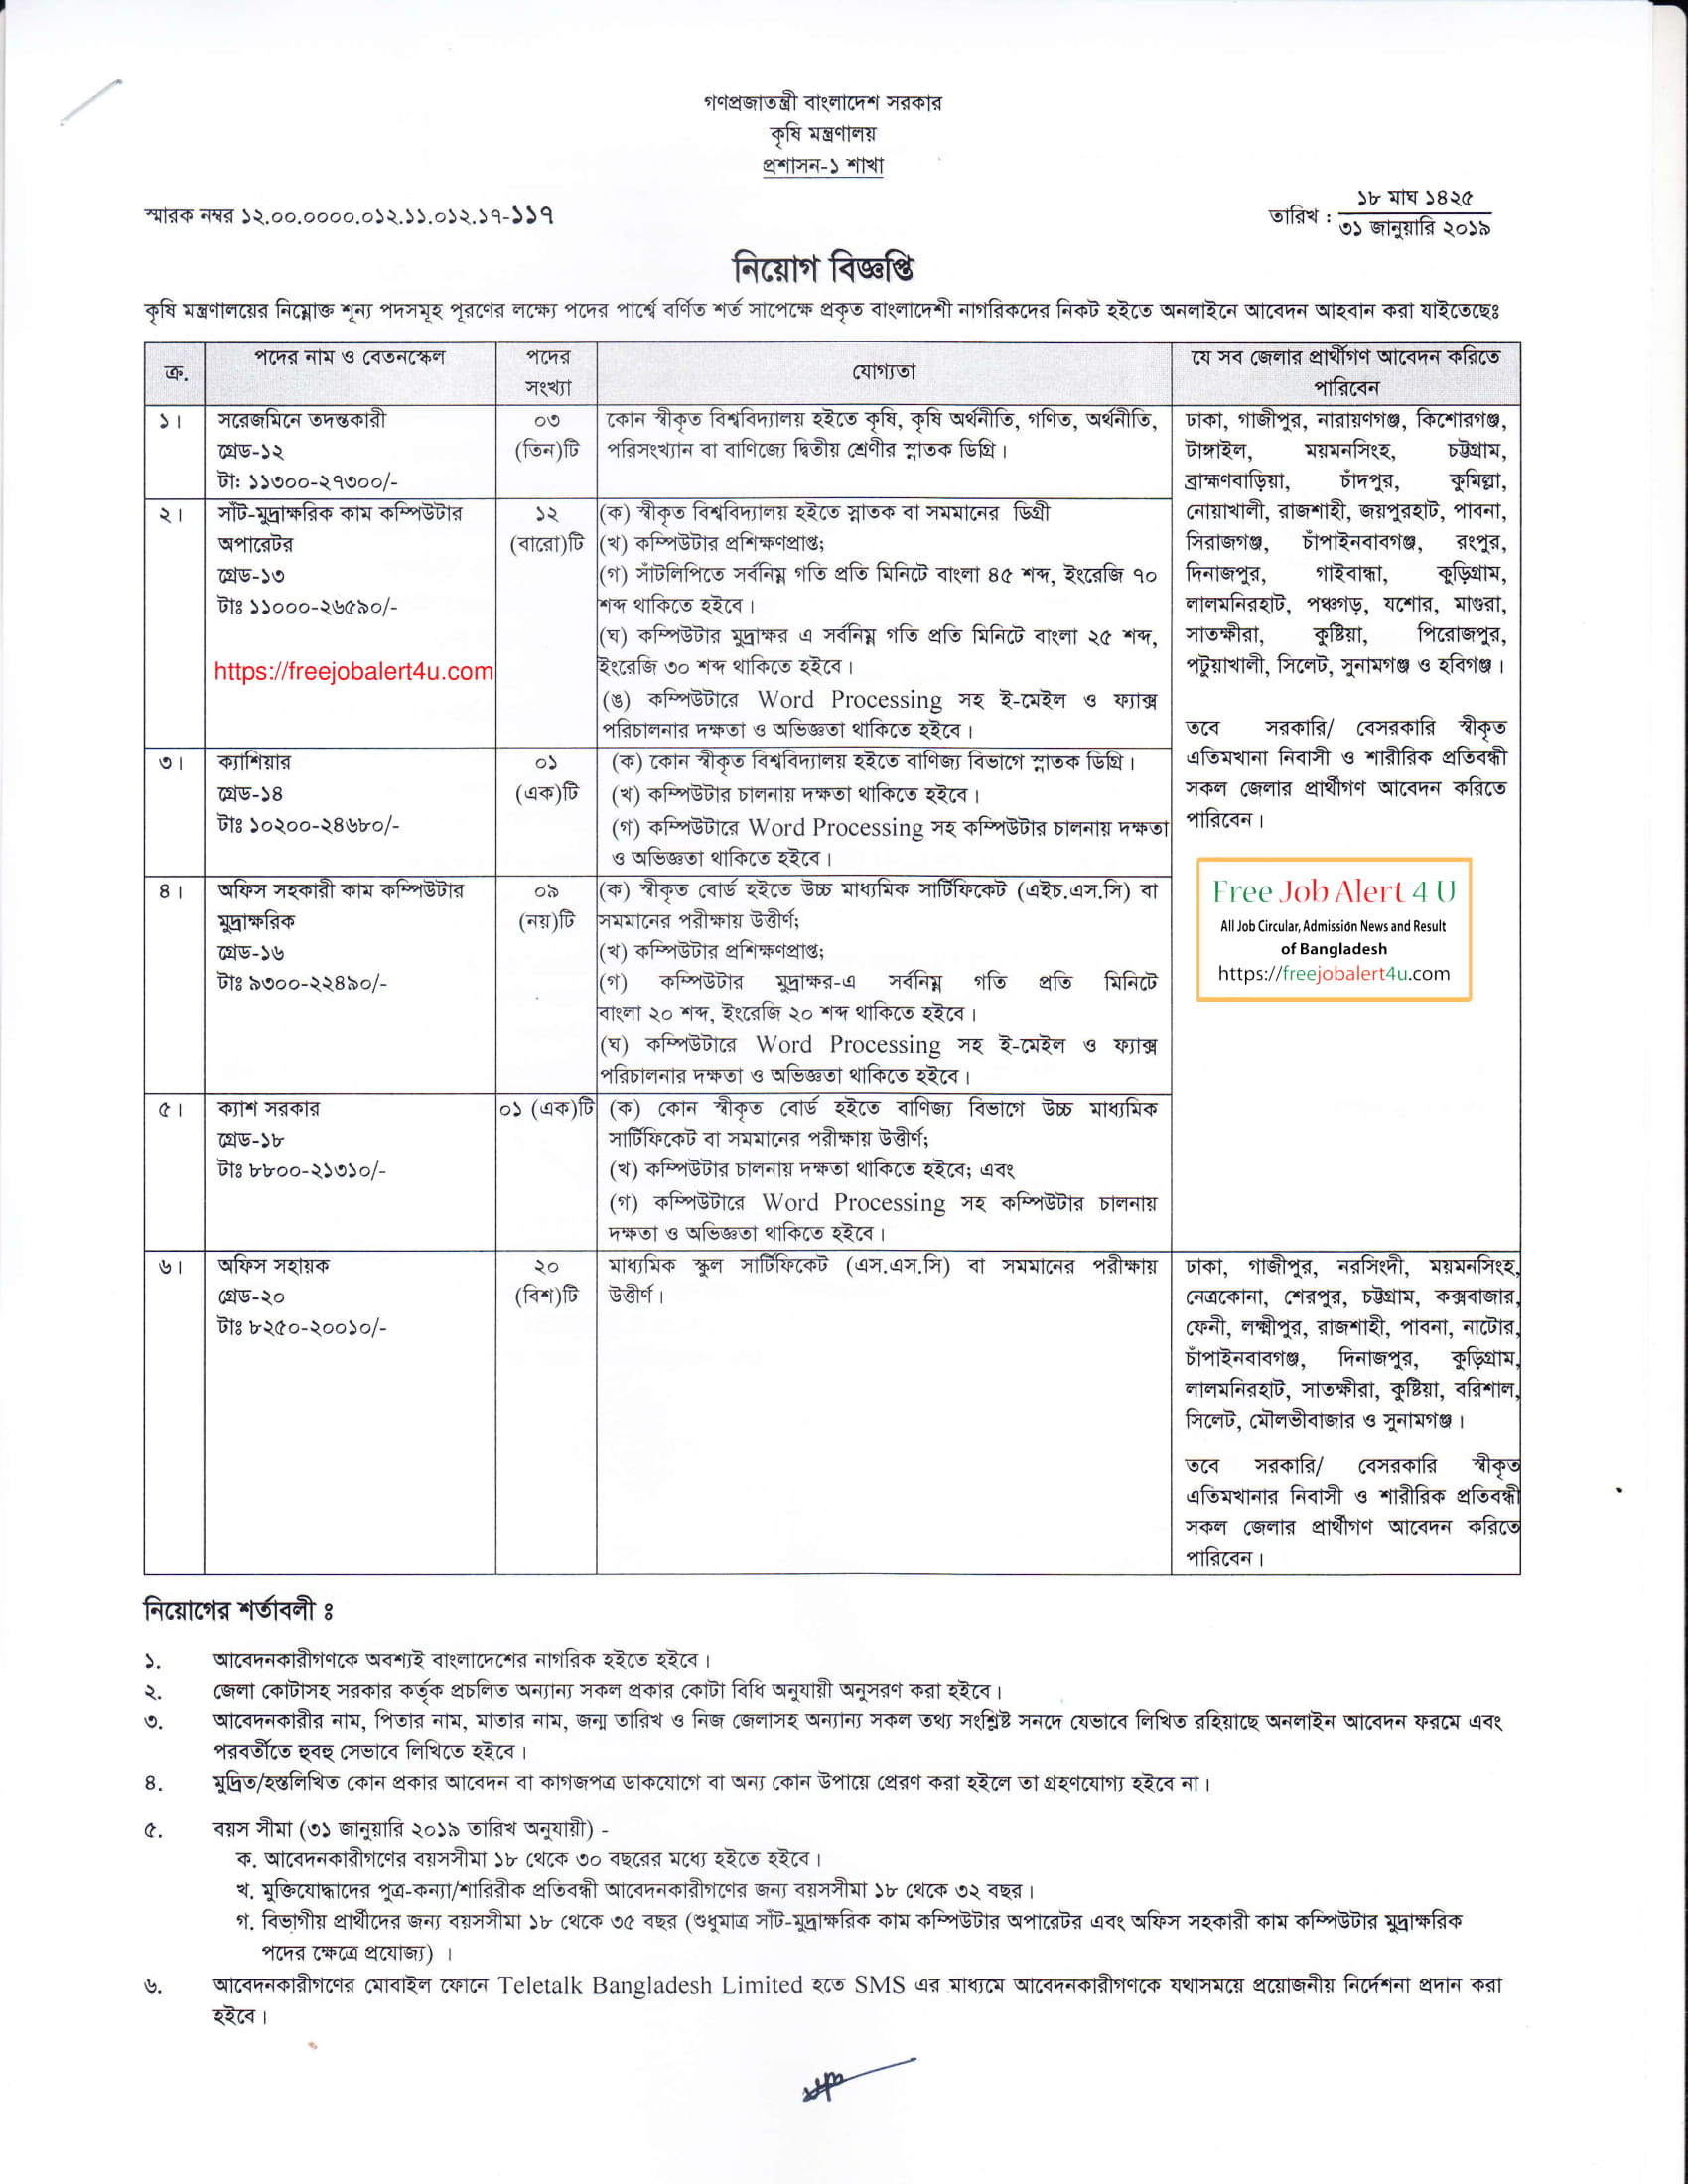 কৃষি মন্ত্রণালয় নিয়োগ বিজ্ঞপ্তি ২০১৯ (Ministry of Agriculture Bangladesh job circular 2019)